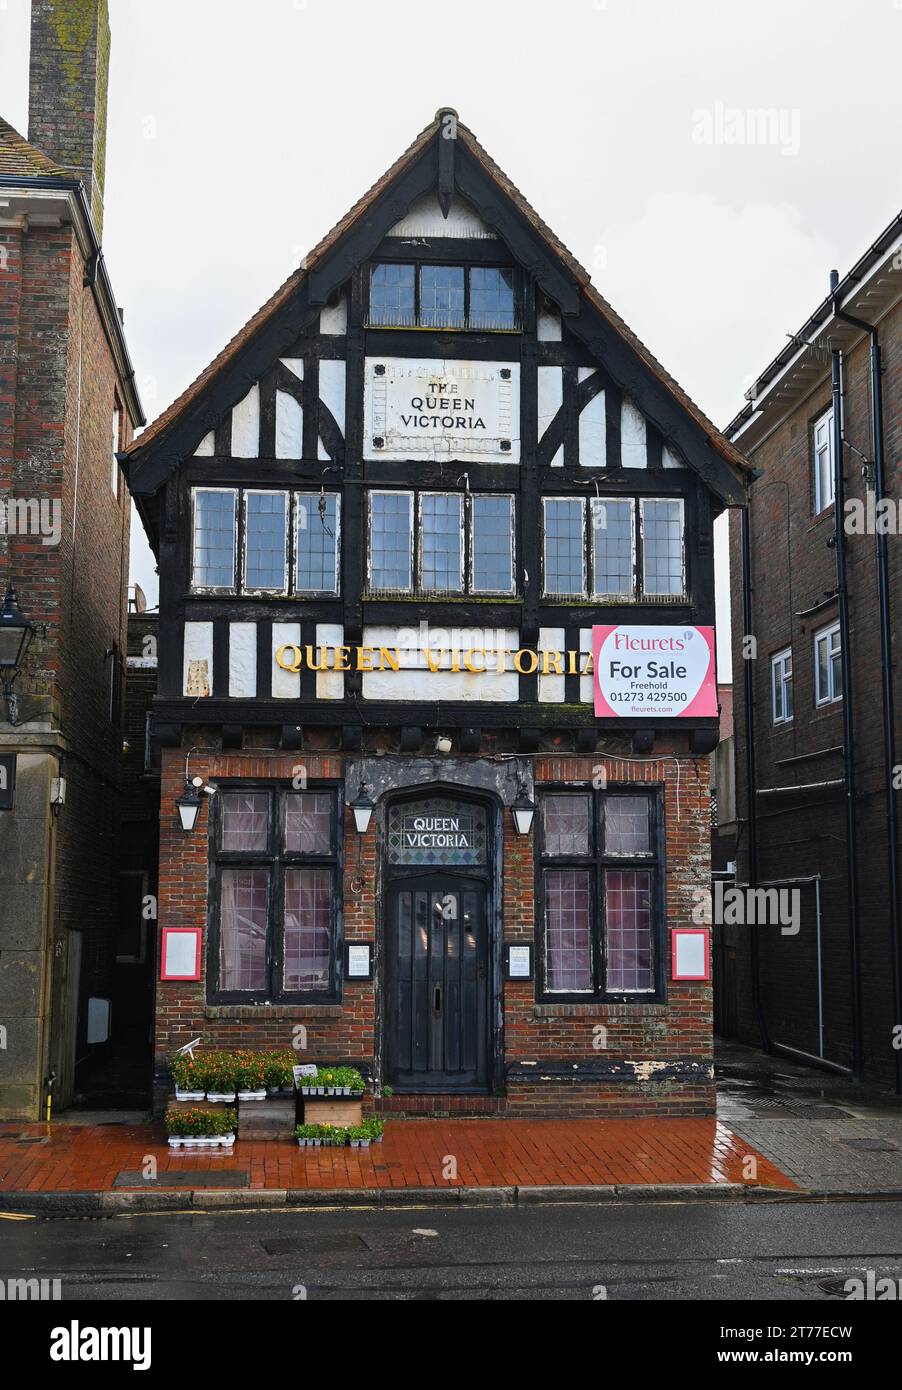 Le pub Queen Victoria dans le village Rottingdean près de Brighton qui a fermé et est en vente Banque D'Images